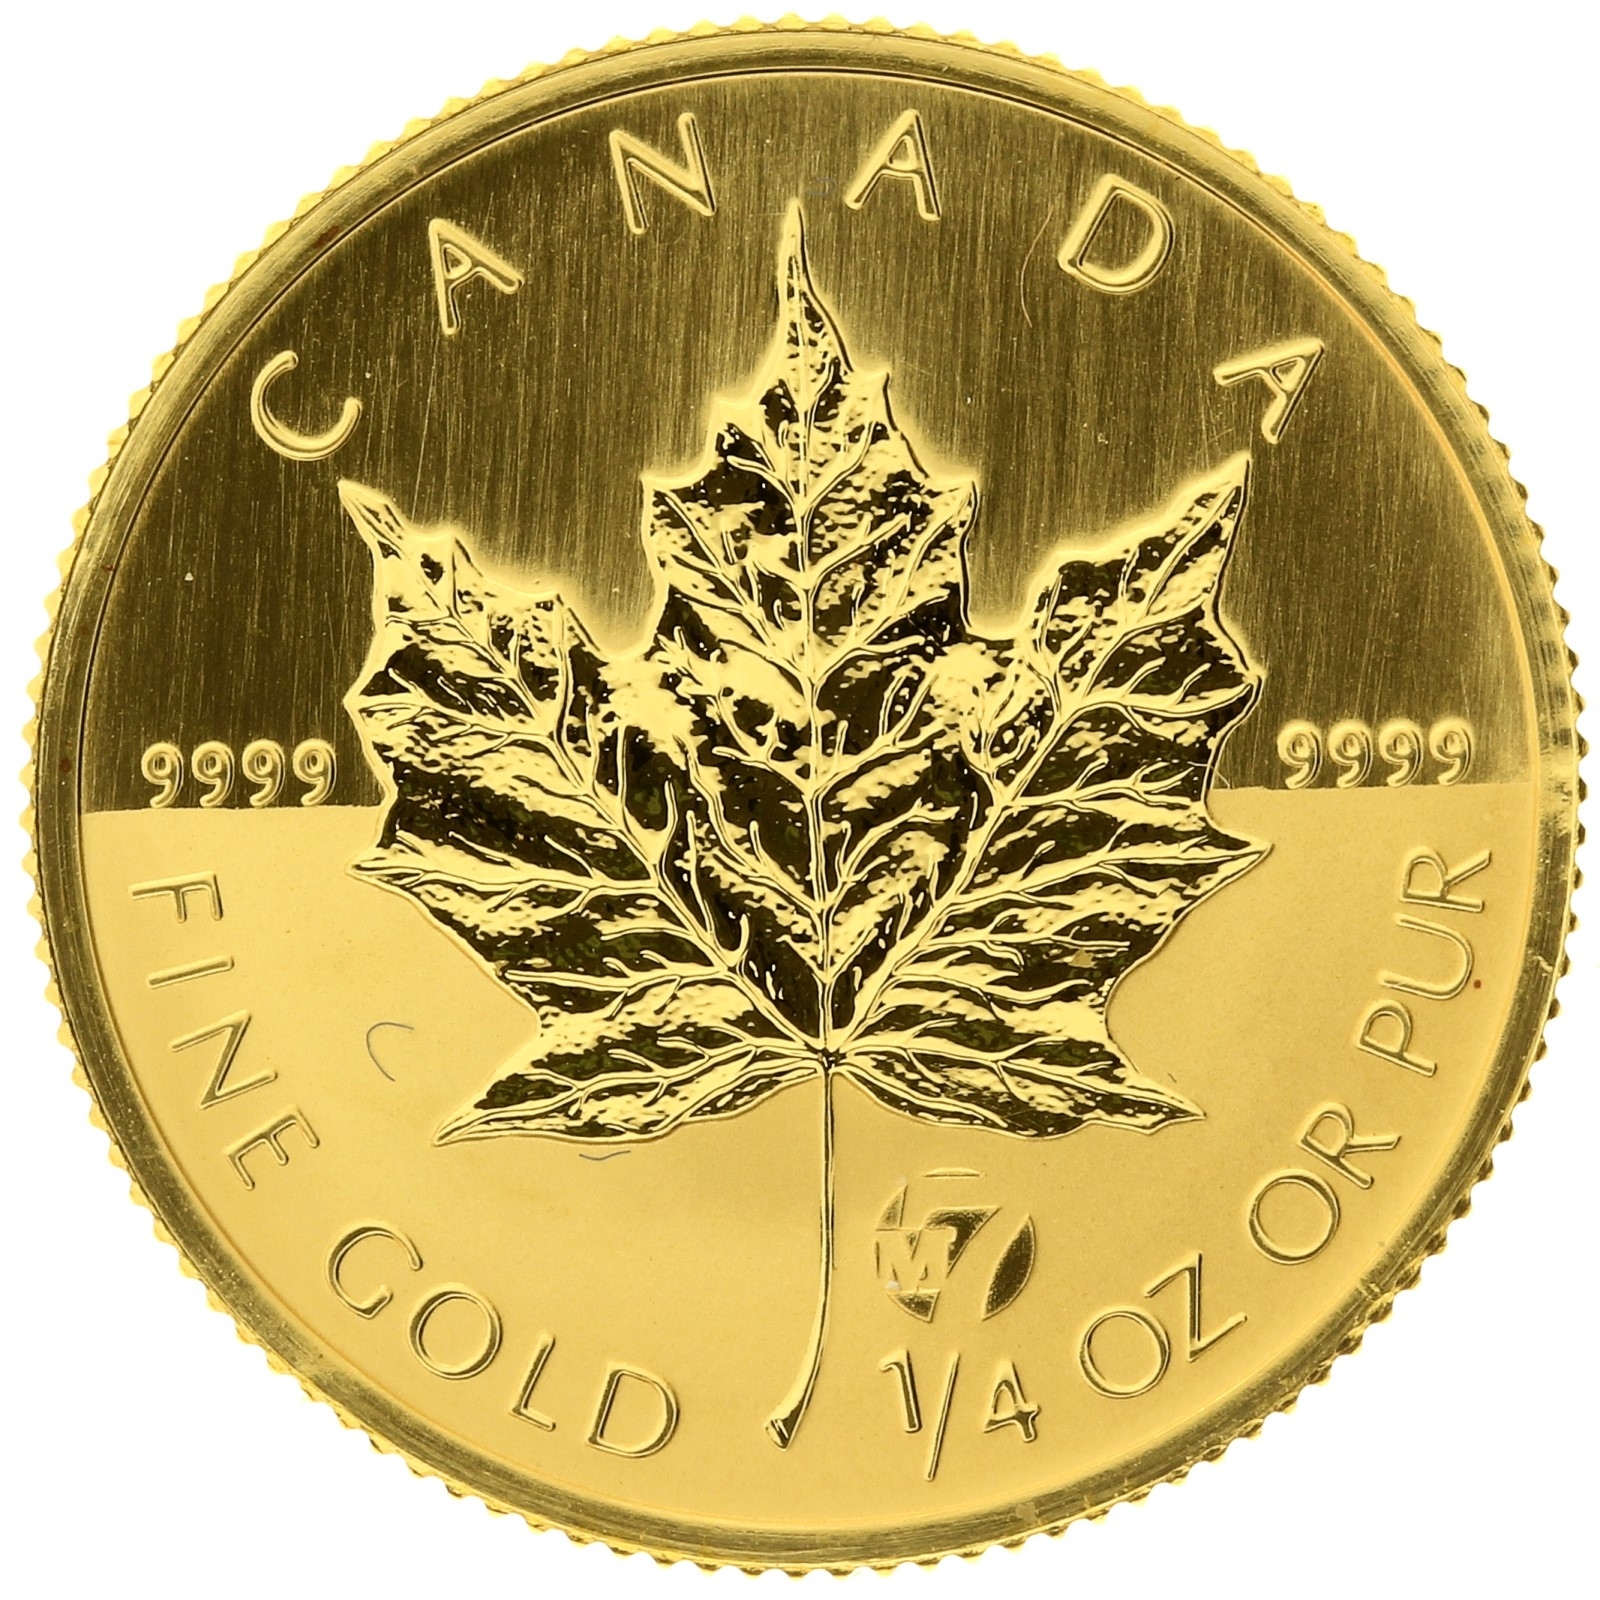 Canada - 10 dollars - 2006 - Maple Leaf - 1/4oz